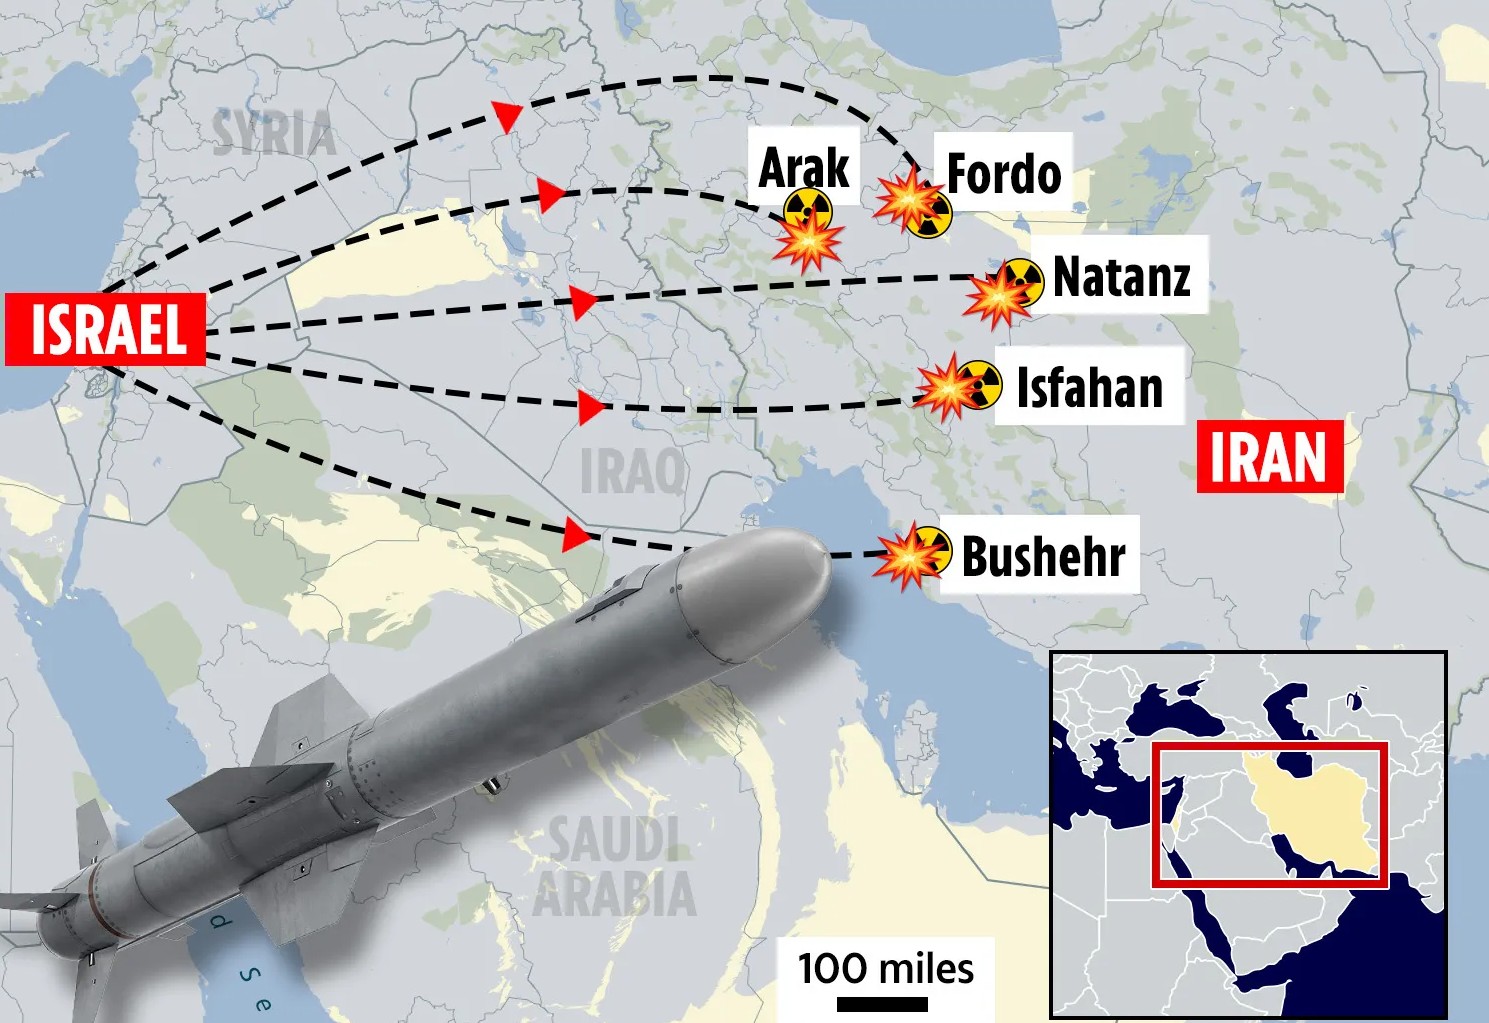 المفاعلات النووية الإيرانية التي يمكن أن تكون أهدافا لضربات إسرائيلية 